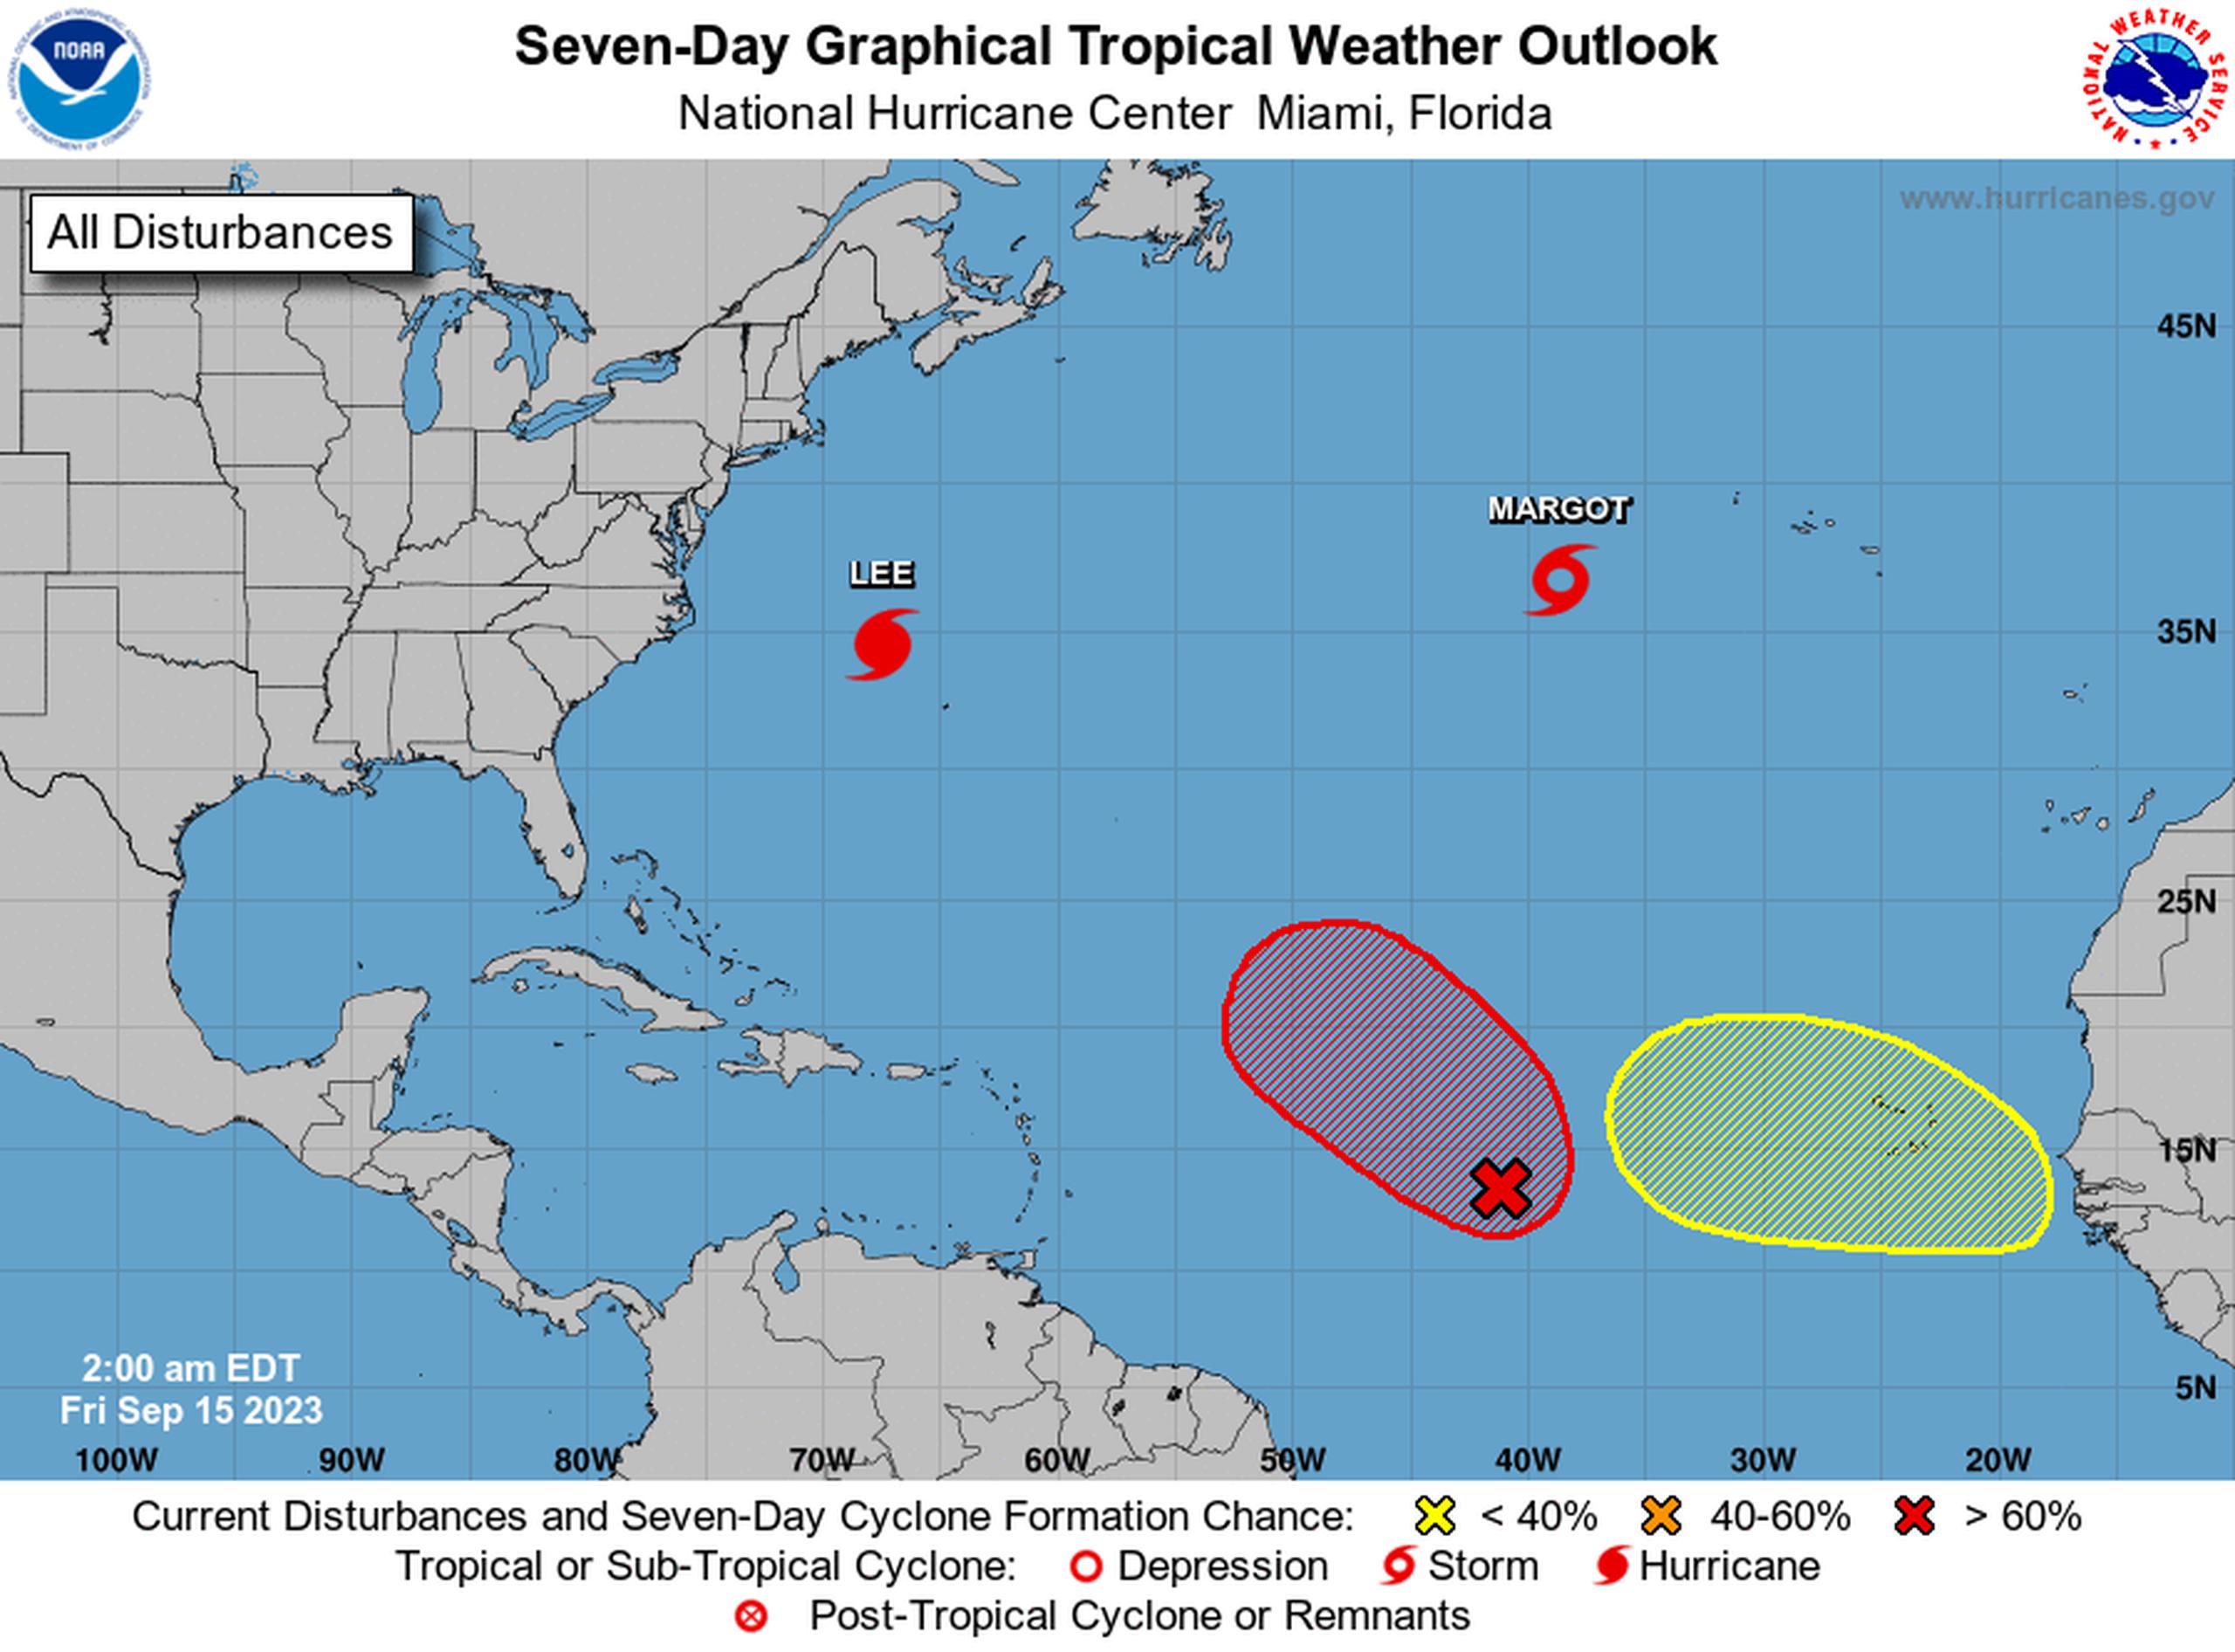 Perspectiva gráfica del clima tropical del Atlántico para siete días, el 15 de septiembre de 2023.